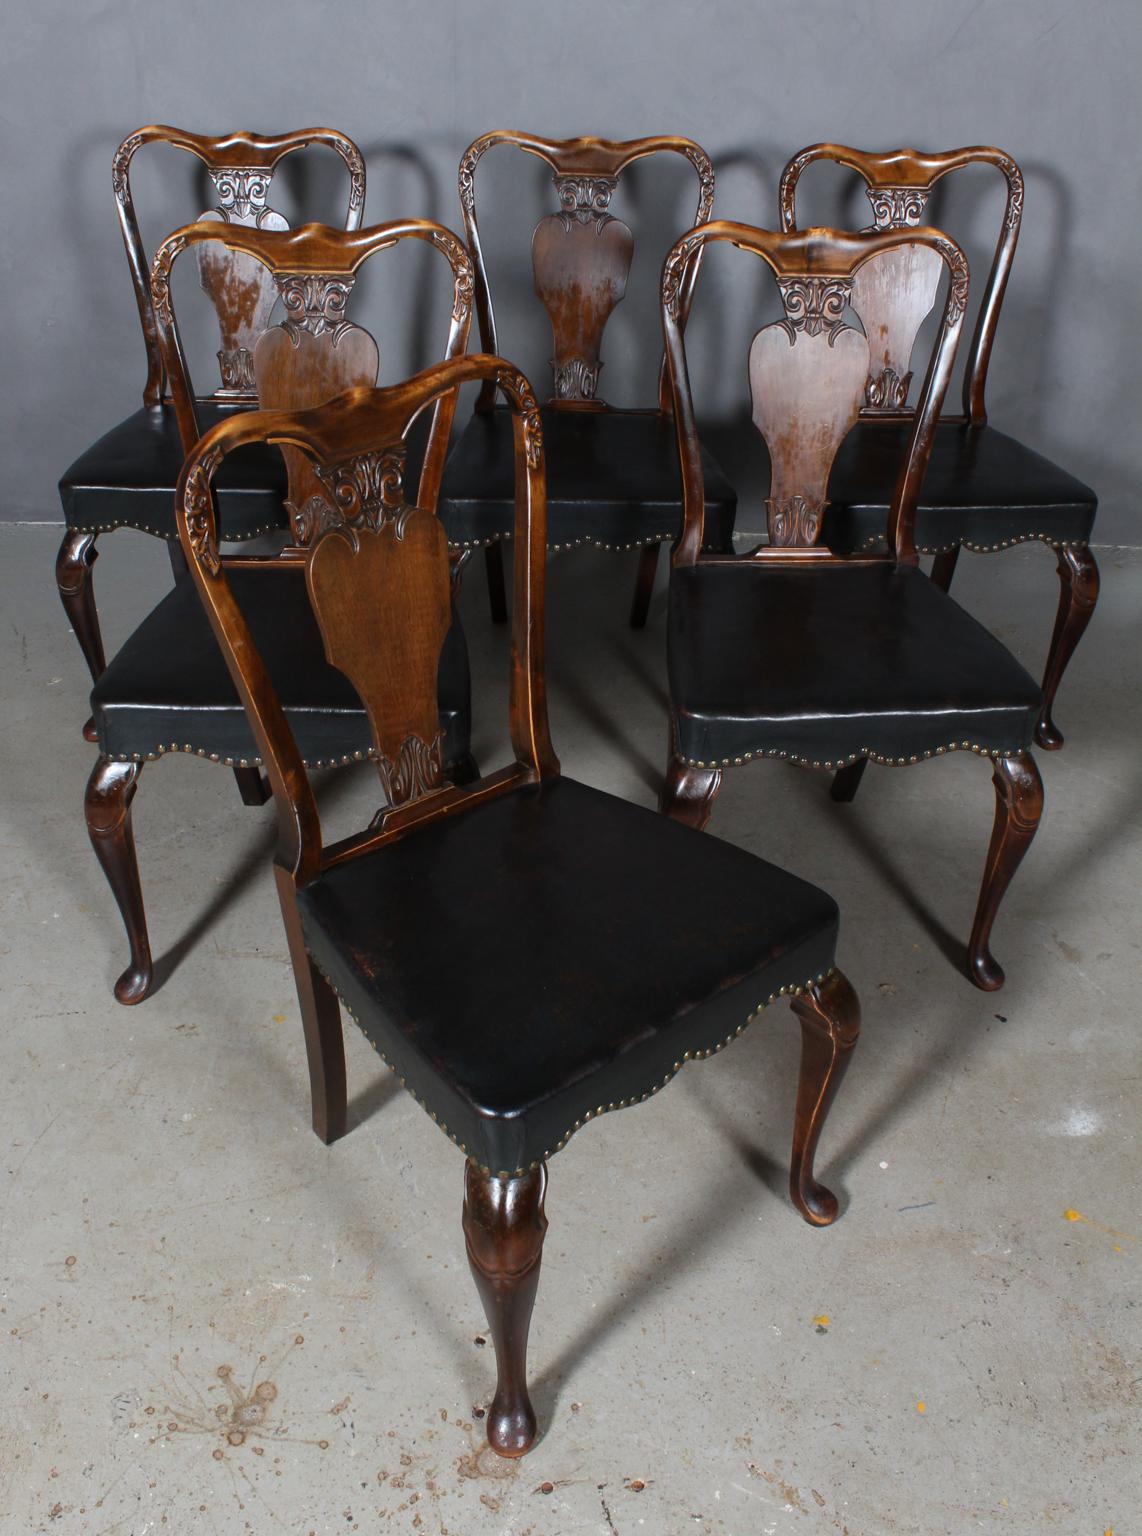 Ensemble de six chaises Rococo en hêtre teinté.

Tapissé d'origine en cuir patiné noir avec clous.

Fabriqué au début du 20e siècle.